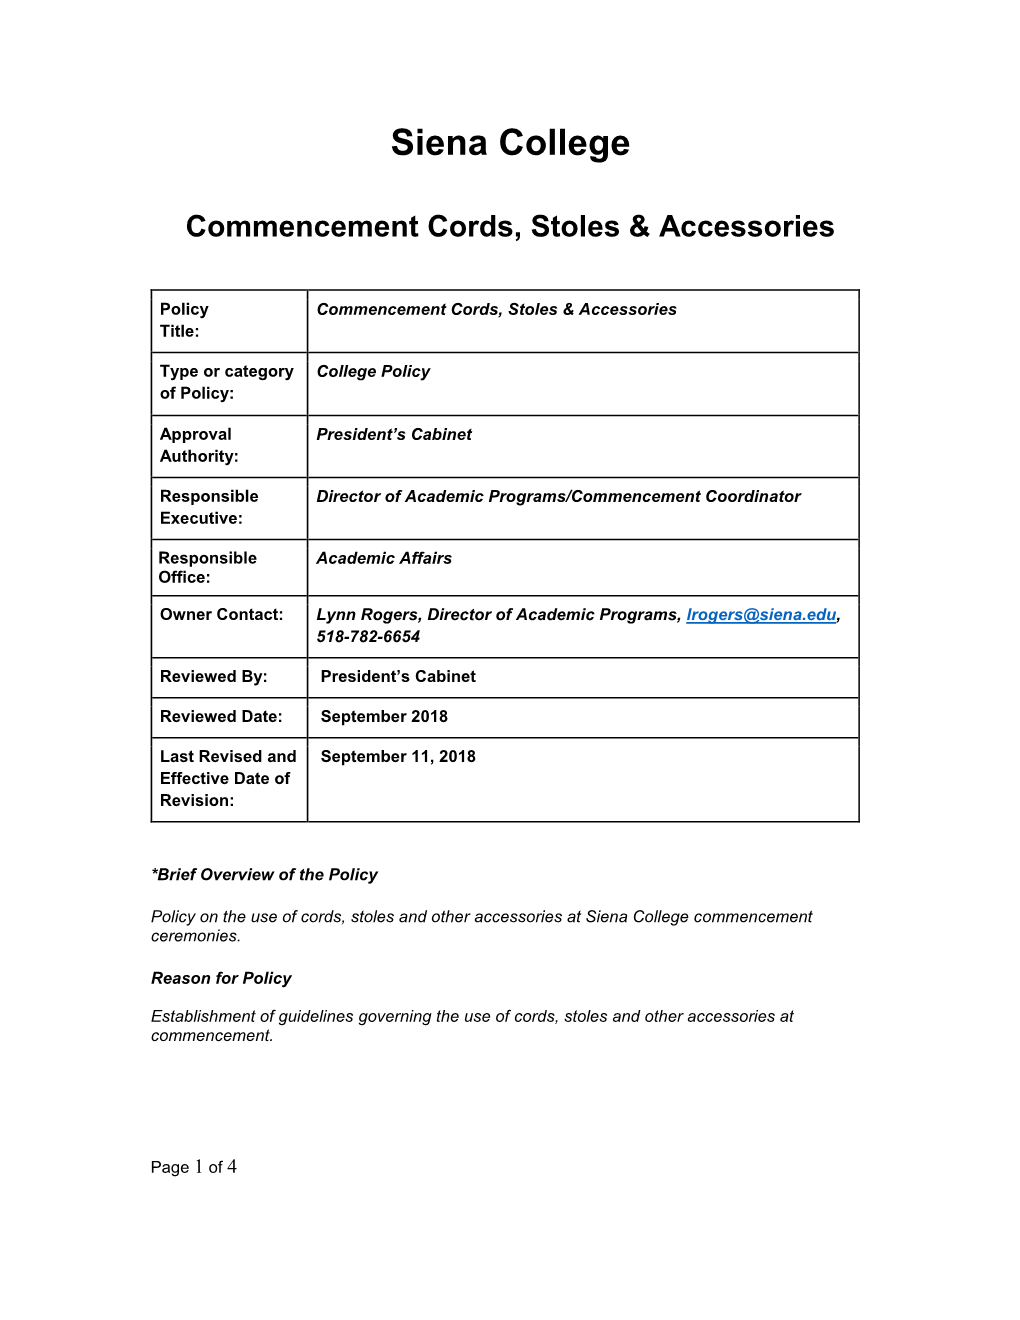 Commencement Cords, Stoles & Accessories